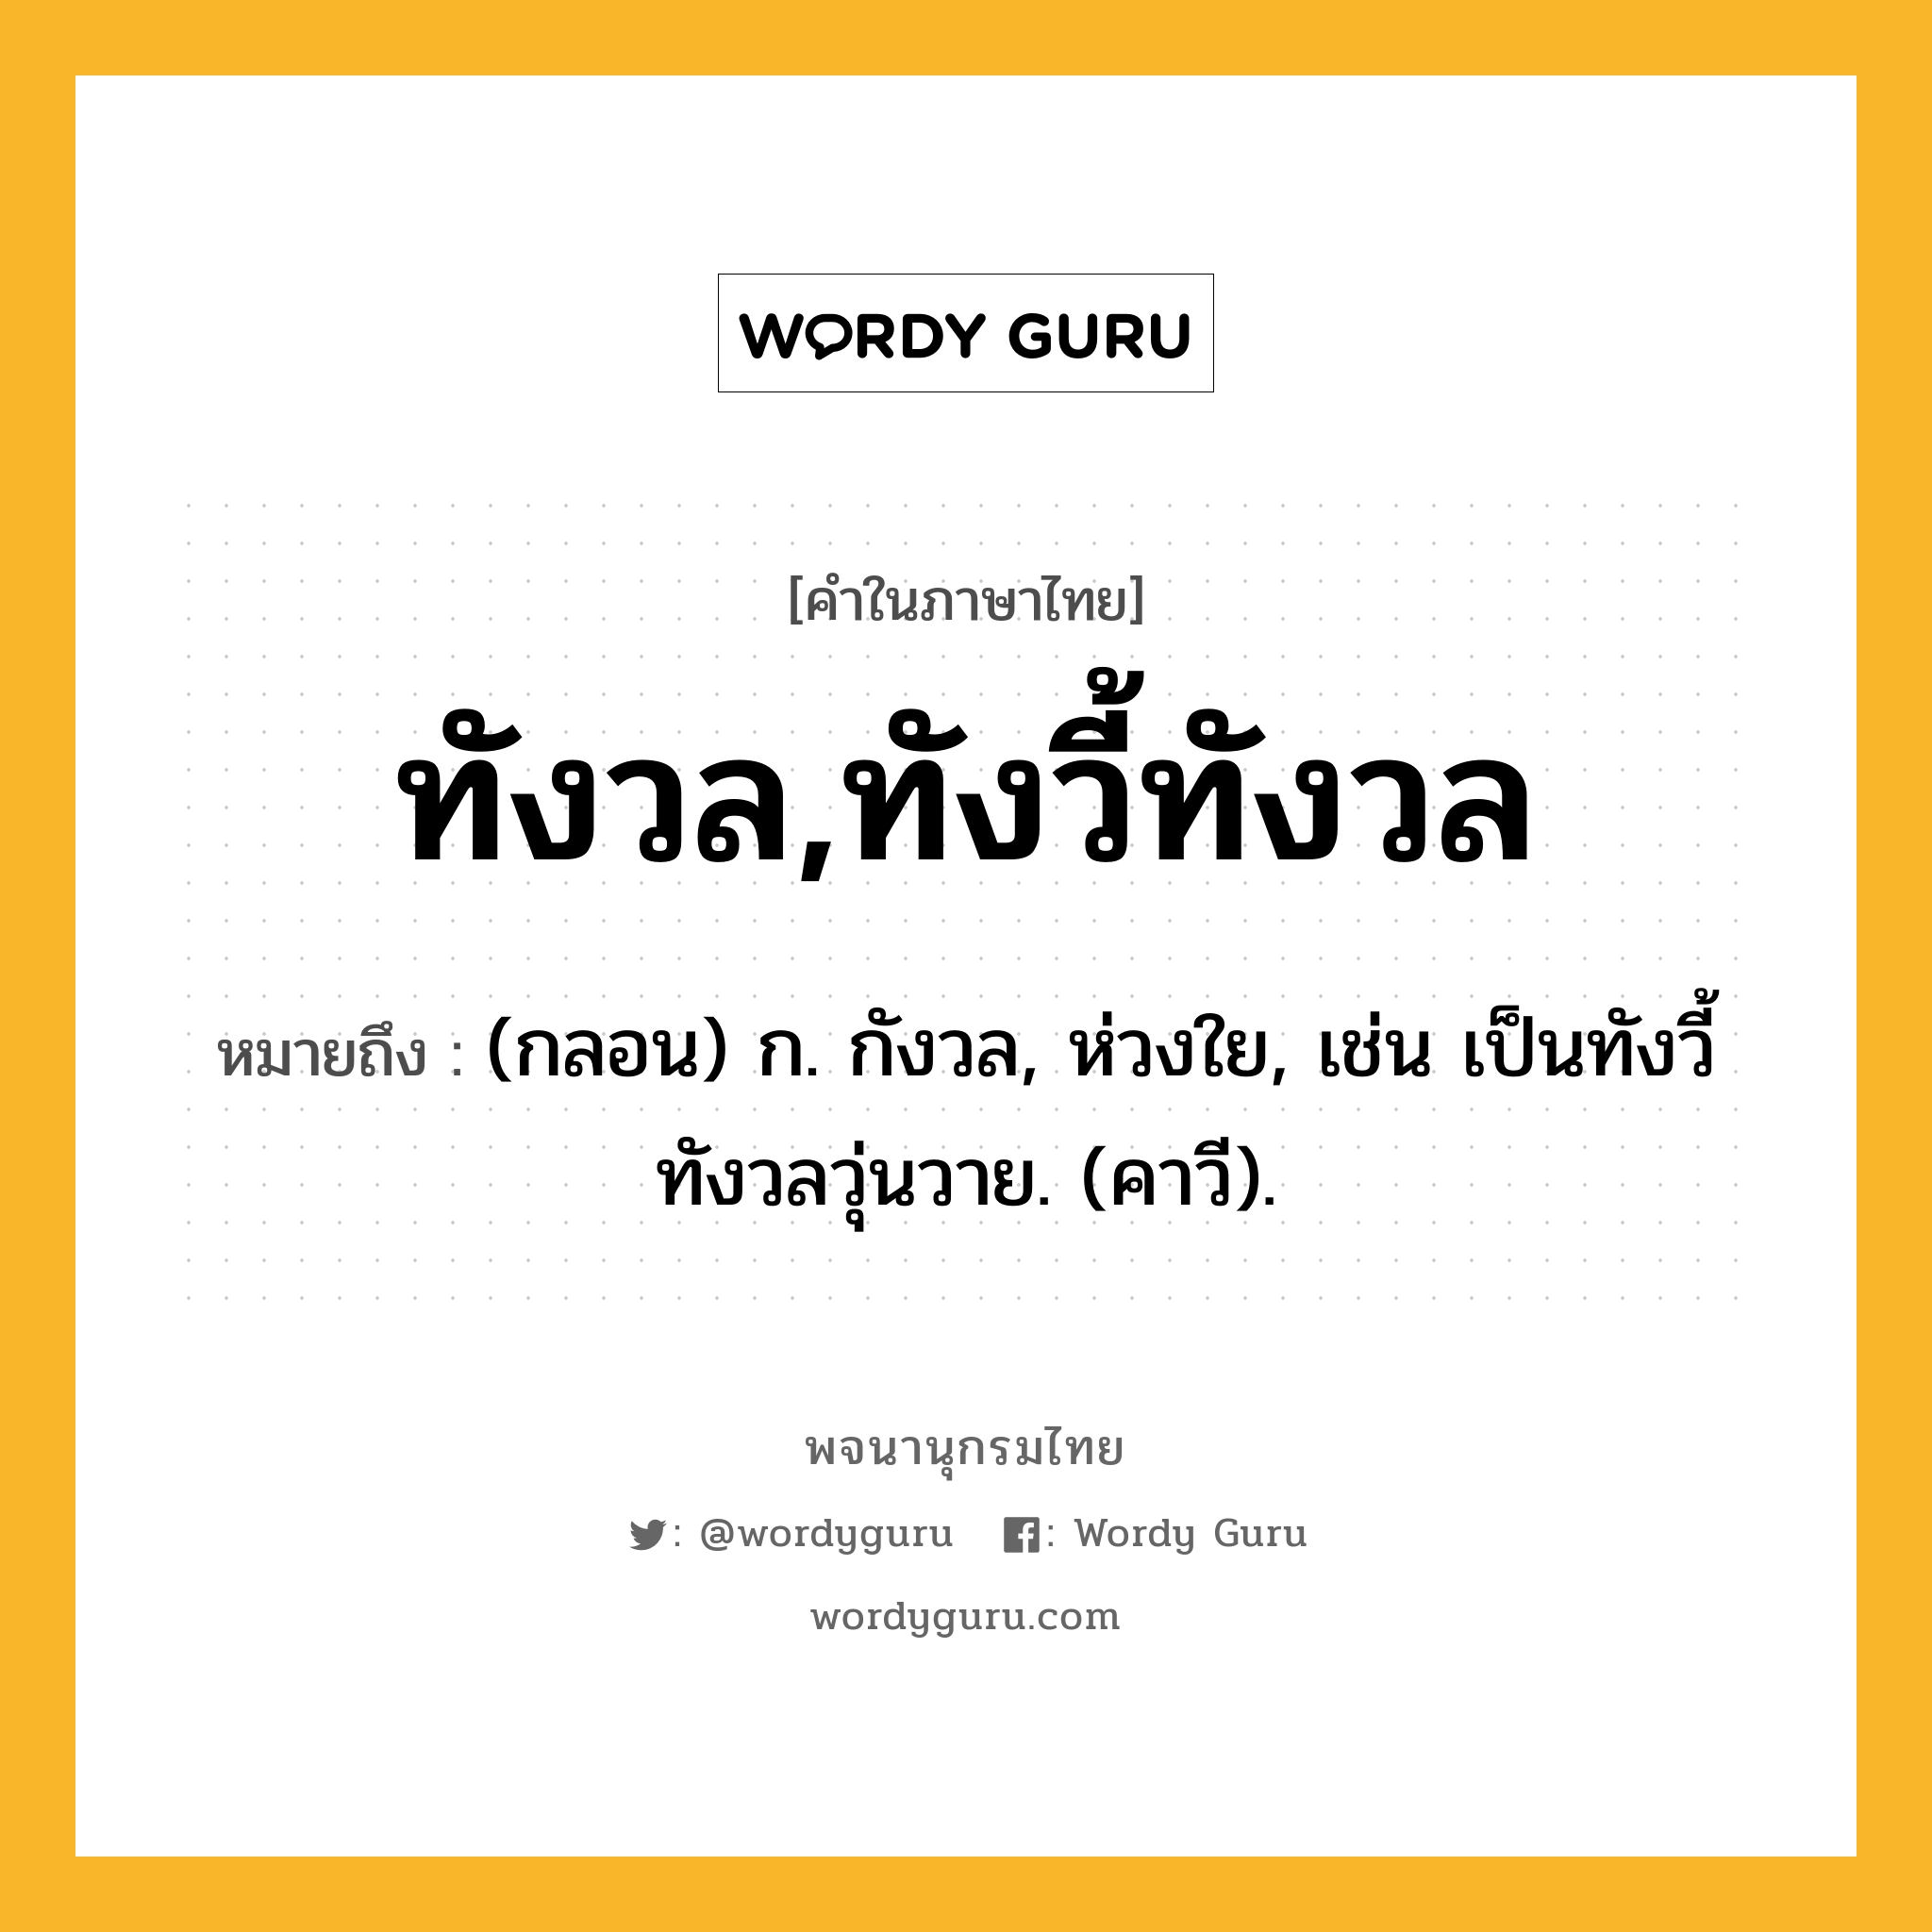 ทังวล,ทังวี้ทังวล ความหมาย หมายถึงอะไร?, คำในภาษาไทย ทังวล,ทังวี้ทังวล หมายถึง (กลอน) ก. กังวล, ห่วงใย, เช่น เป็นทังวี้ทังวลวุ่นวาย. (คาวี).